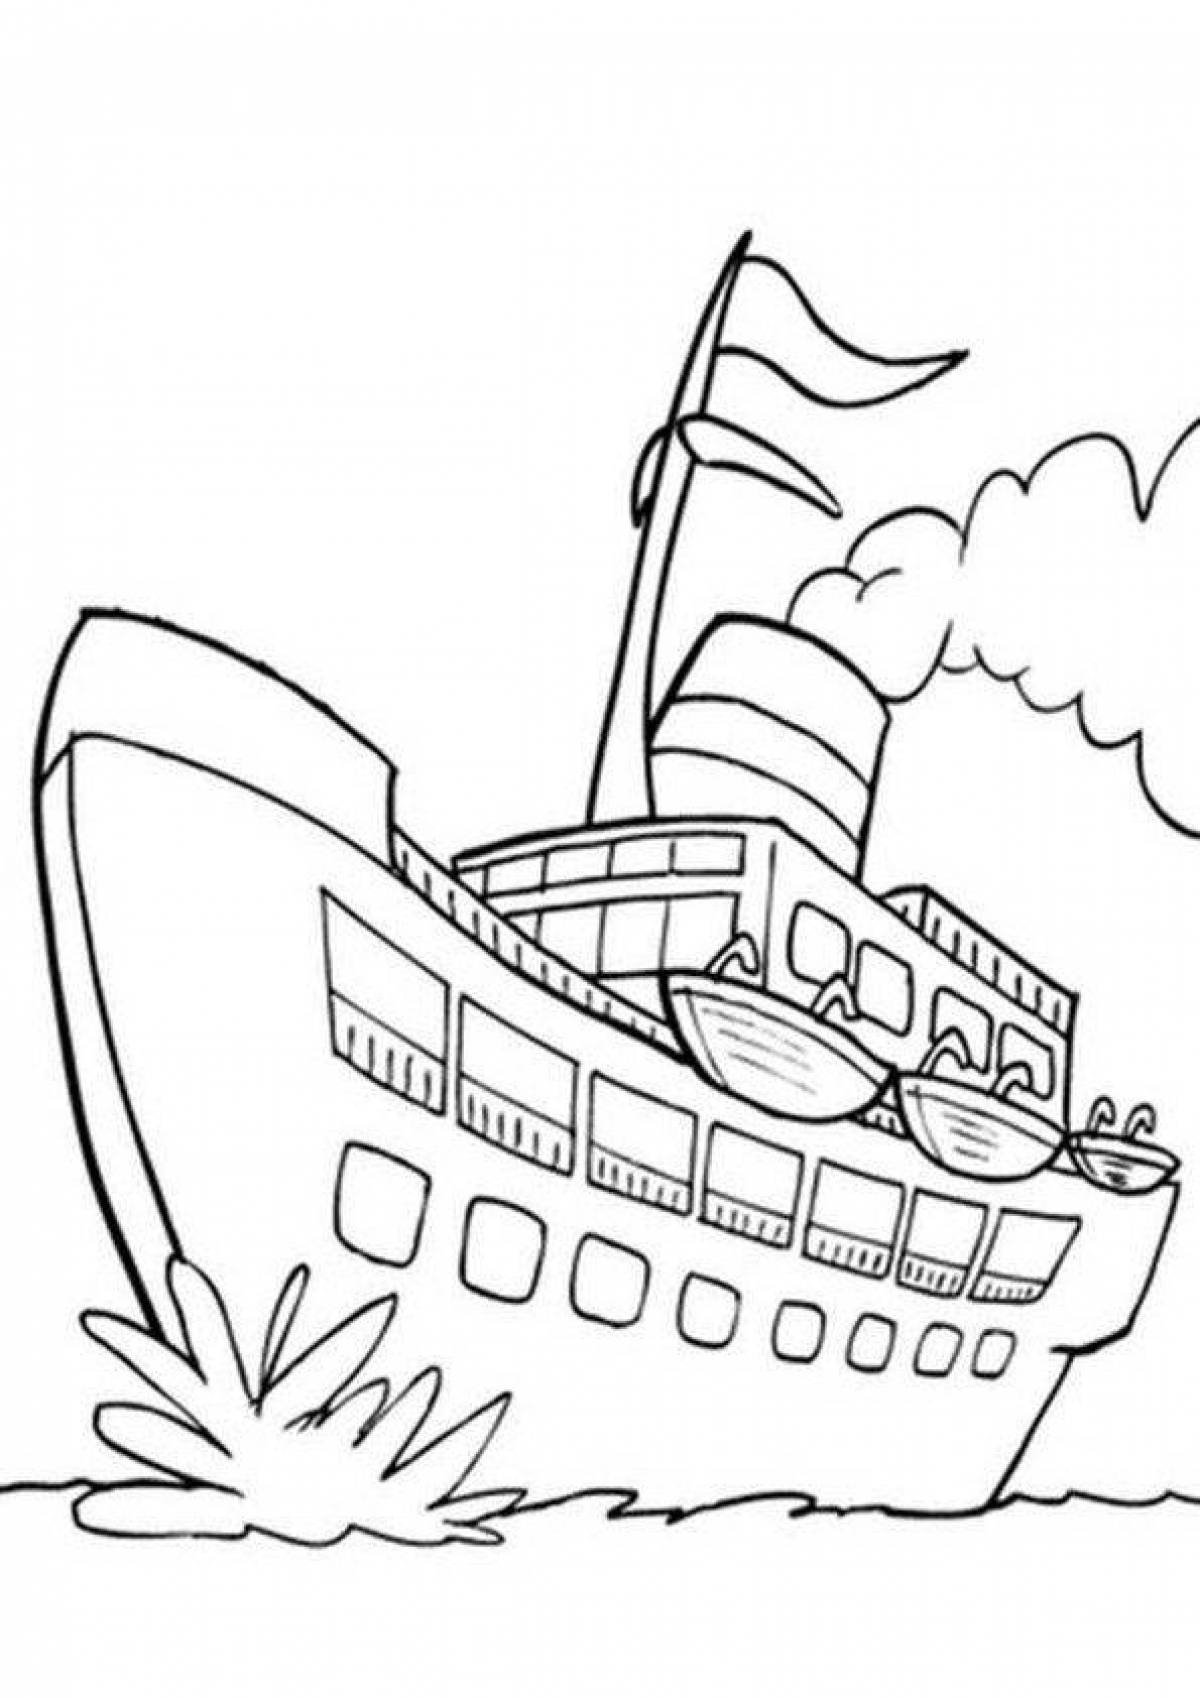 Пароход черно белый. Корабли. Раскраска. Корабль раскраска для детей. Пароход раскраска для детей. Корабль для раскрашивания для детей.